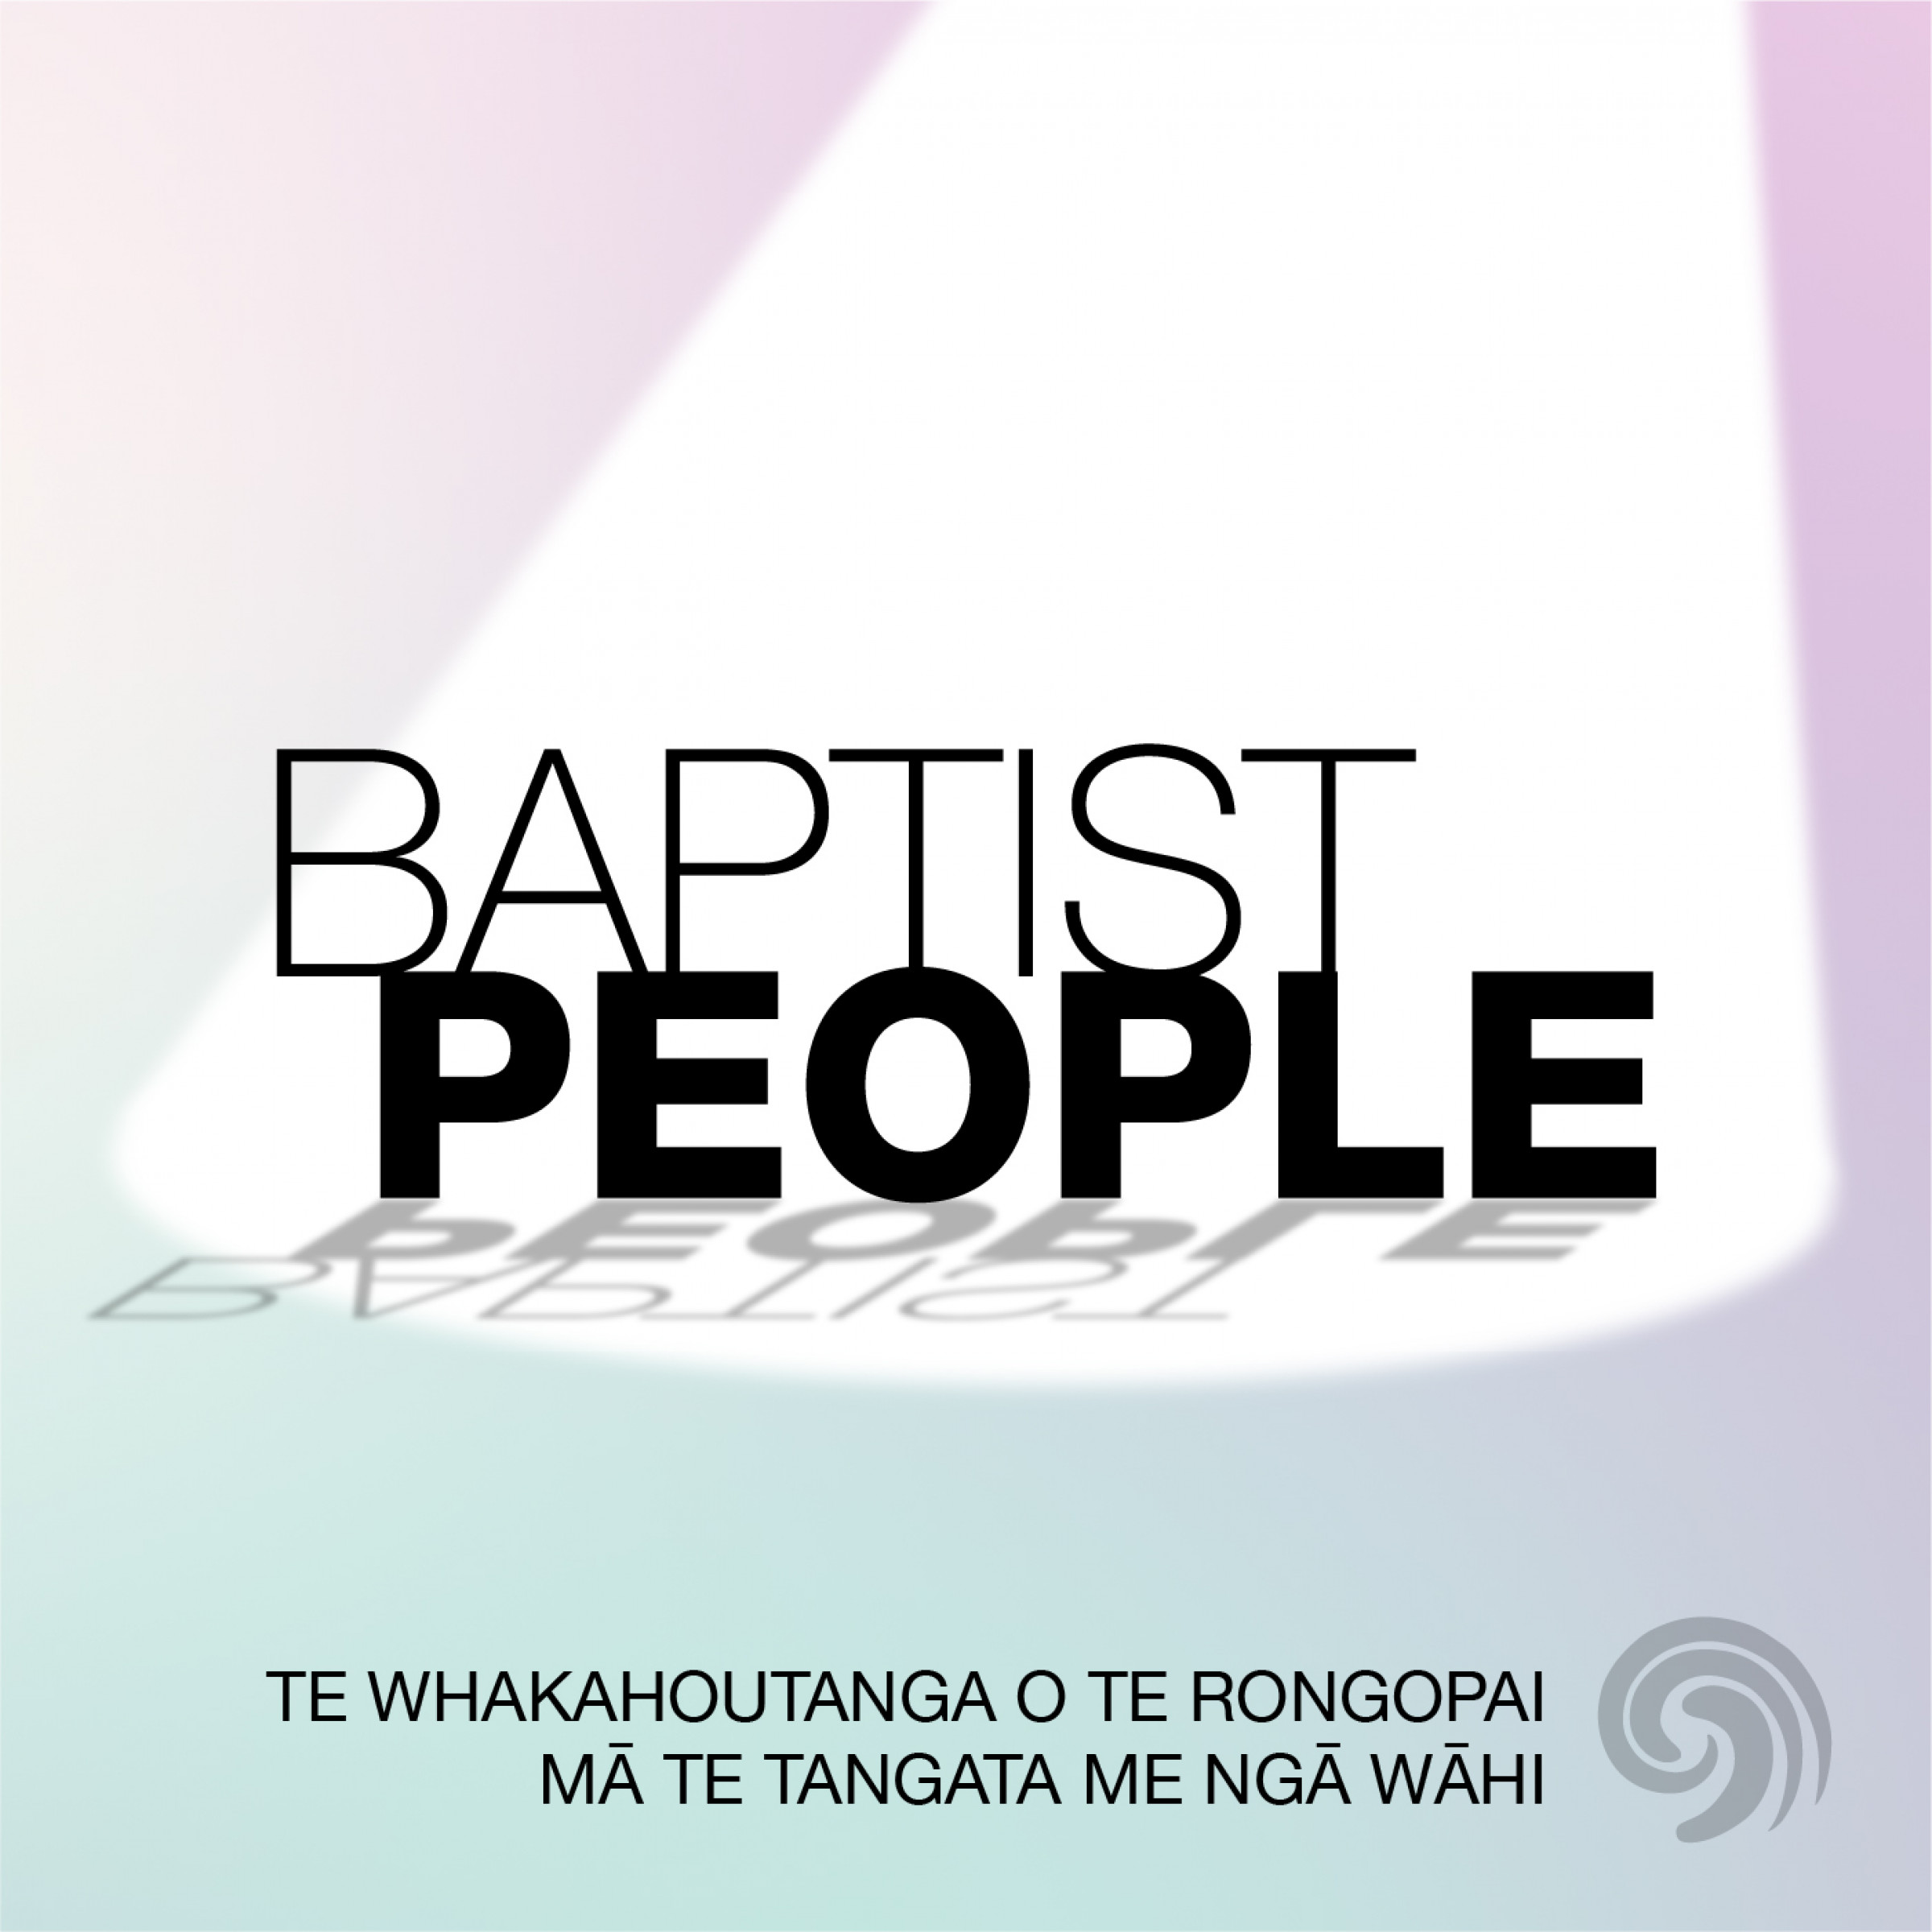 Baptist People Image